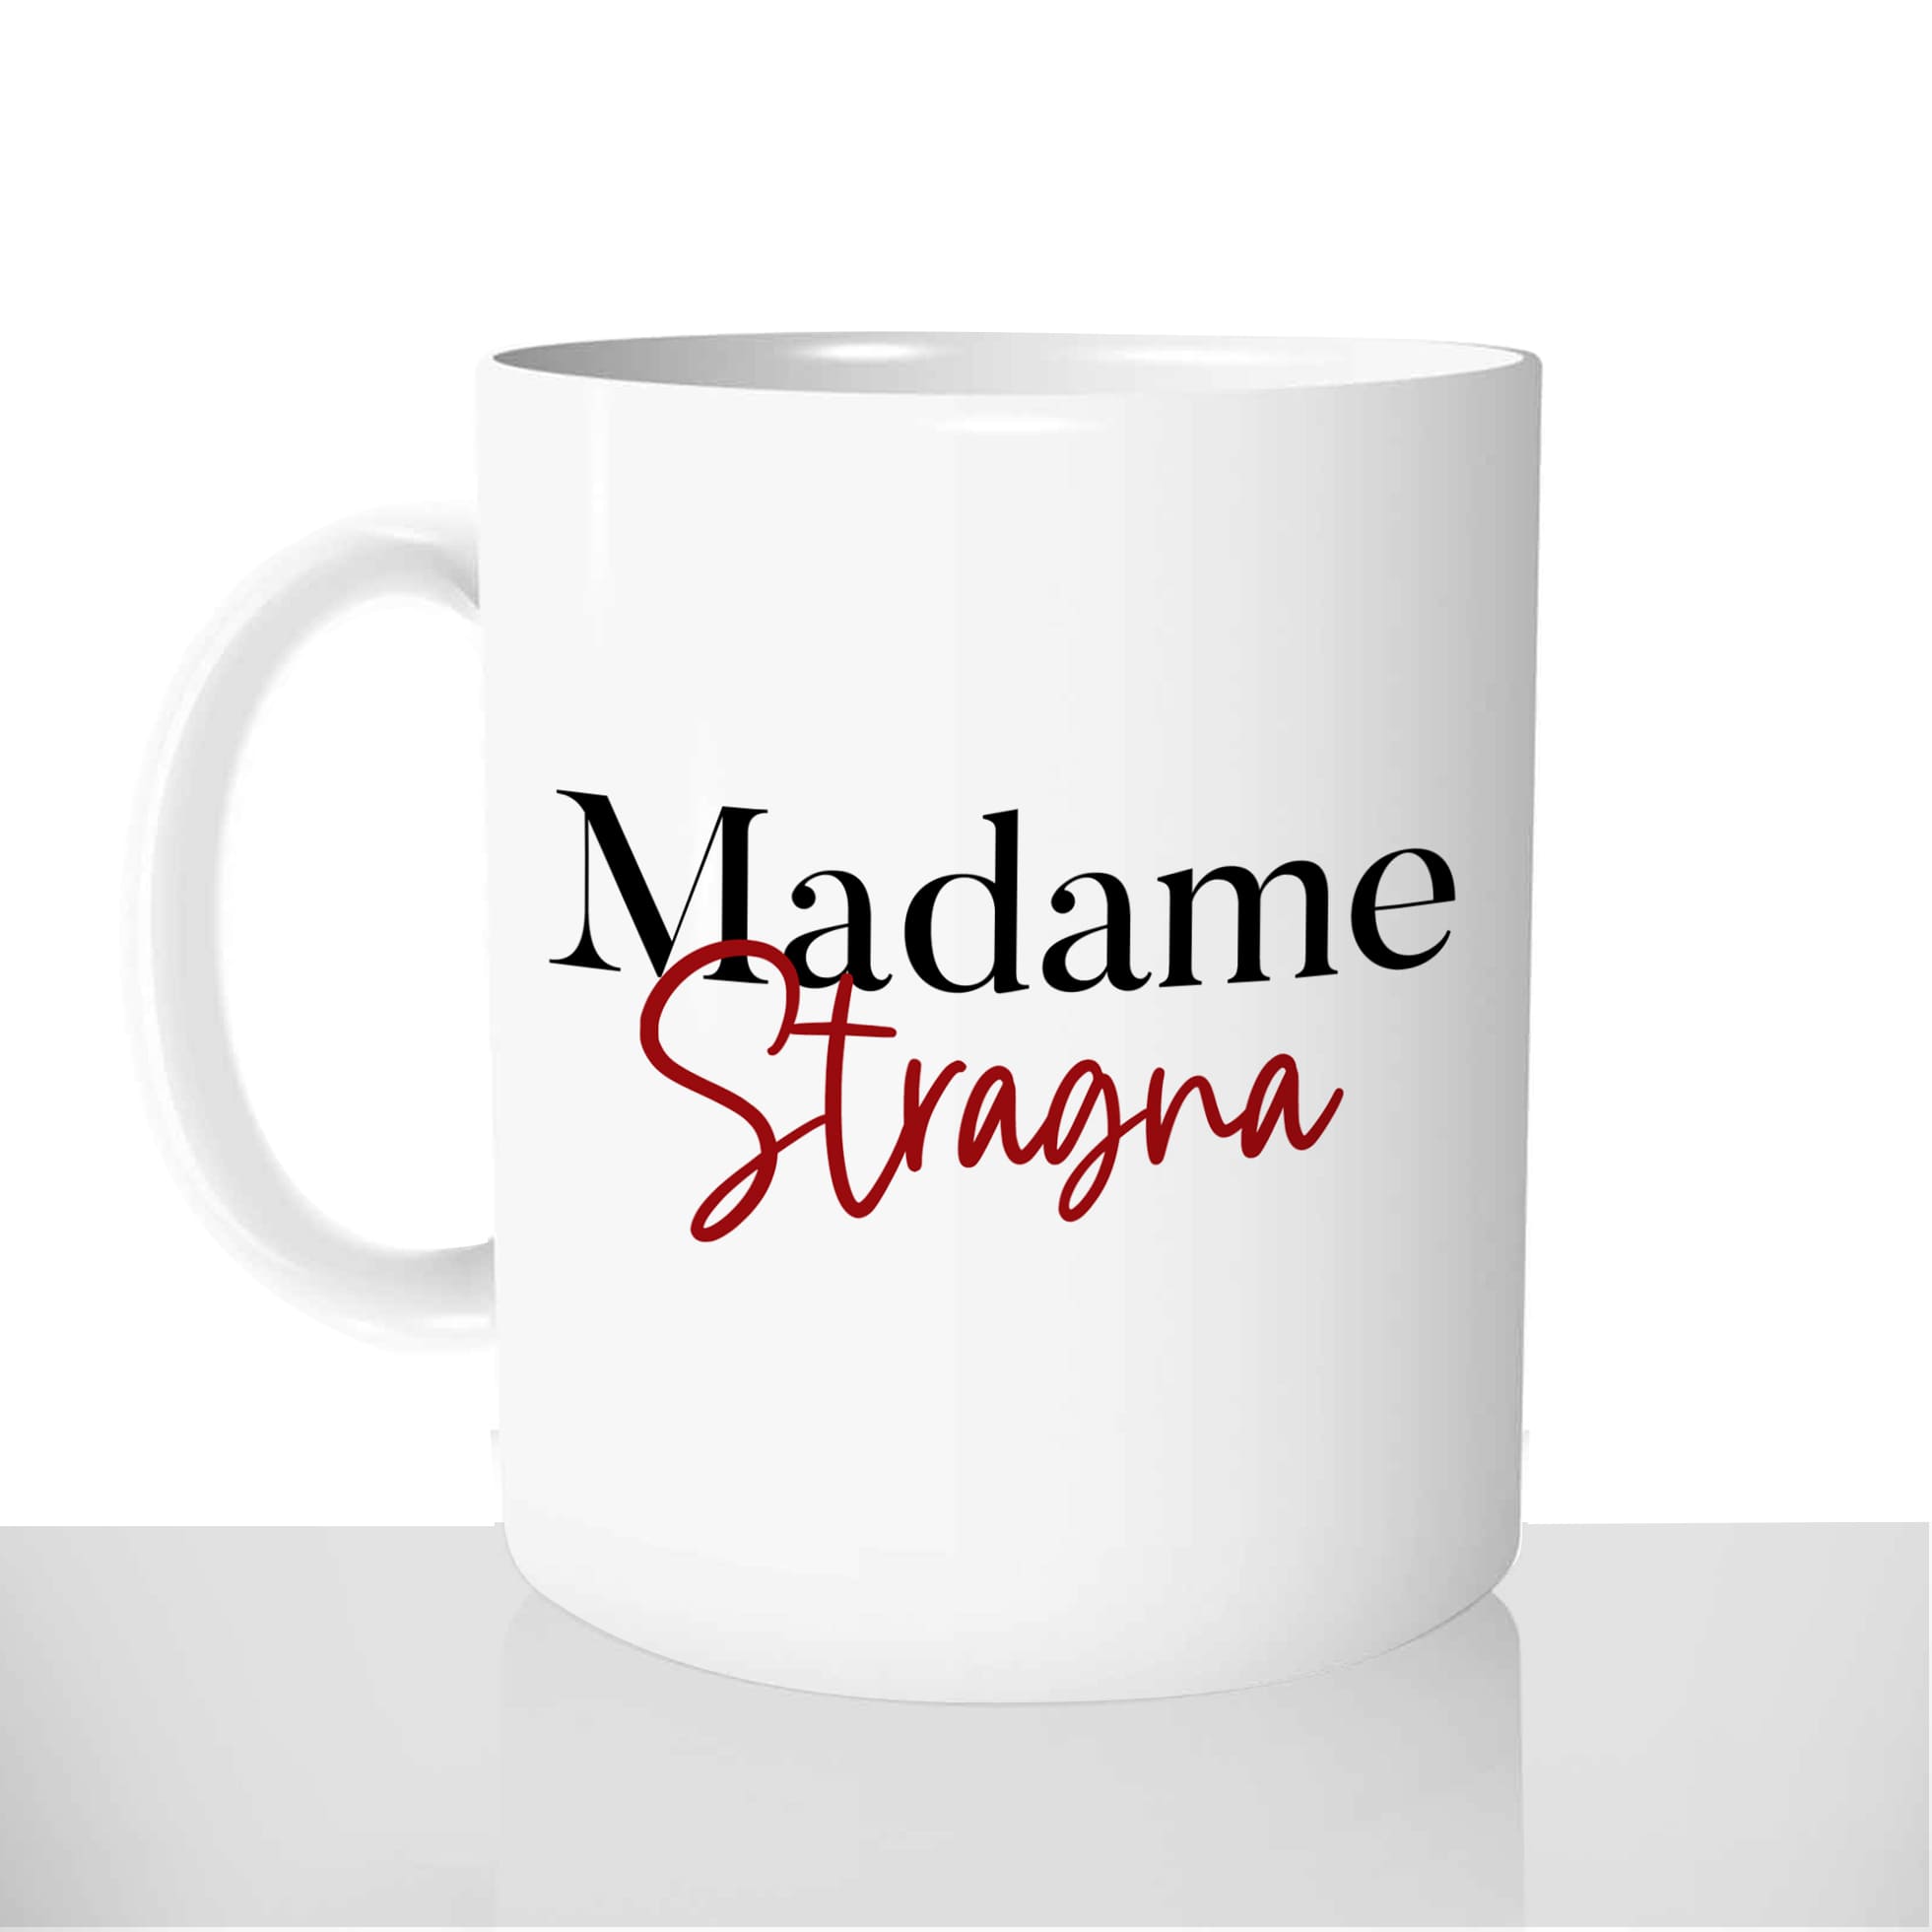 mug-blanc-brillant-personnalisé-offrir-madame-stragna-corse-femme-drole-anniversaire-noel-amis-fun-personnalisable-idée-cadeau-original